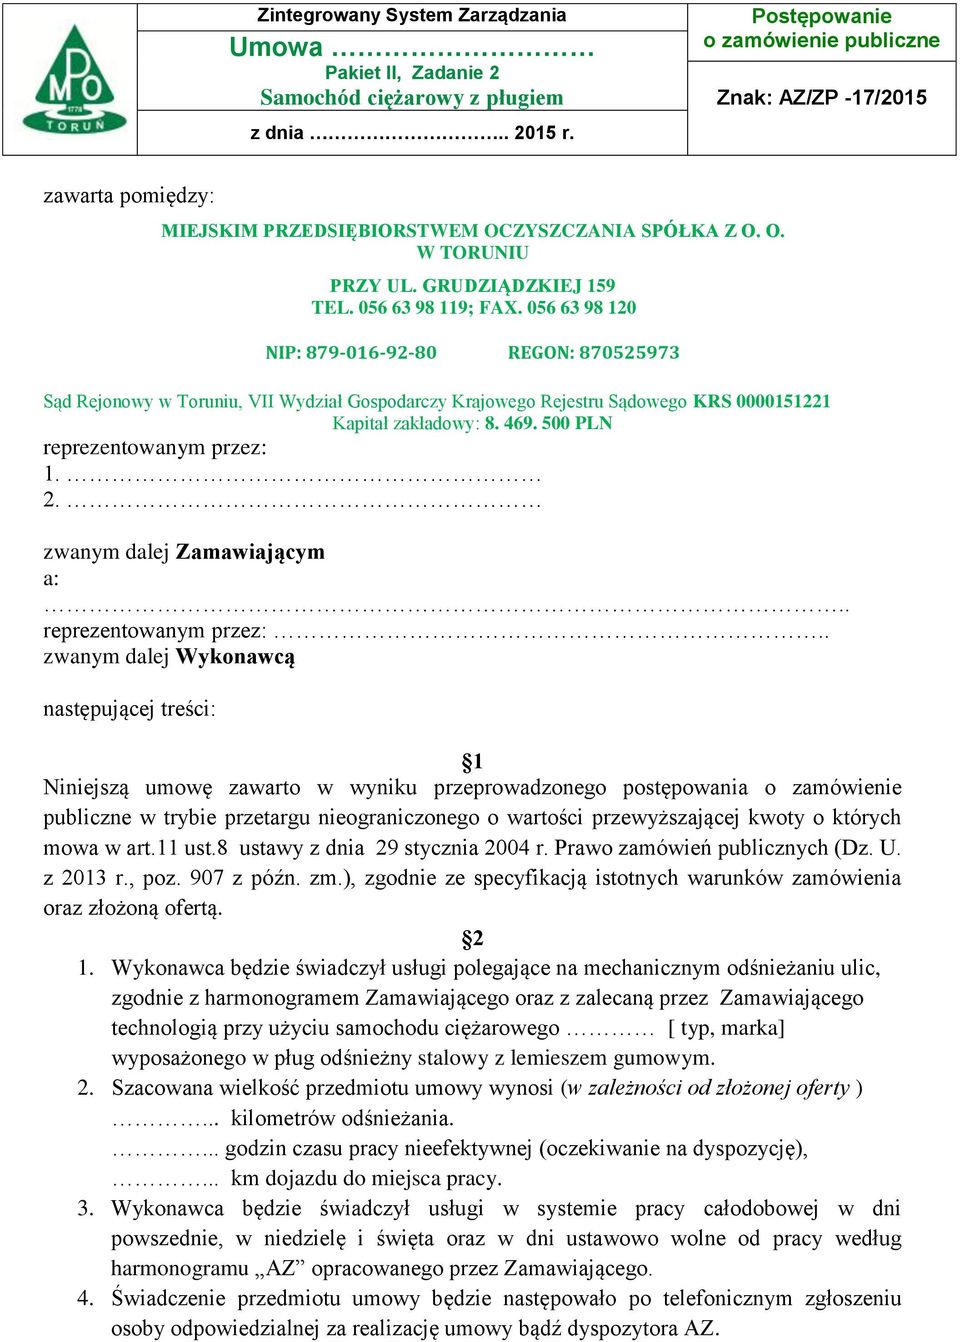 056 63 98 120 NIP: 879-016-92-80 REGON: 870525973 Sąd Rejonowy w Toruniu, VII Wydział Gospodarczy Krajowego Rejestru Sądowego KRS 0000151221 Kapitał zakładowy: 8. 469.